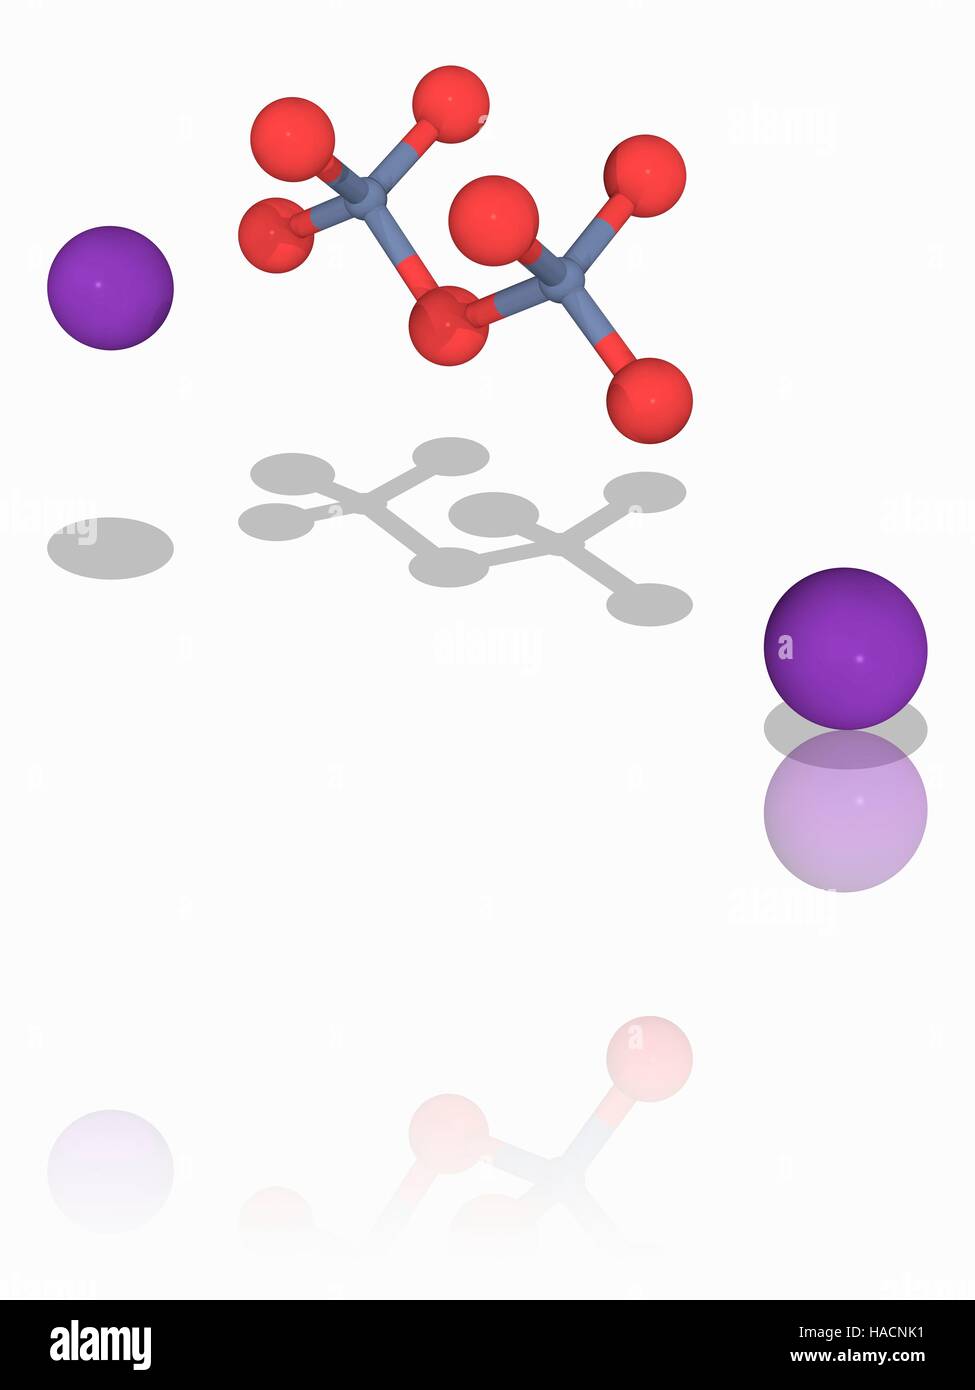 Il bicromato di potassio. Il modello molecolare del composto chimico di bicromato di potassio (K2.Cr2.O7). Questo composto ionico è più comunemente utilizzato come agente ossidante. Ha un colore rosso-arancio, e viene utilizzato anche come un colorante e un indicatore chimico. Gli atomi sono rappresentati da sfere e sono codificati a colori: cromo (grigio), Ossigeno (rosso) e potassio (viola). Illustrazione. Foto Stock